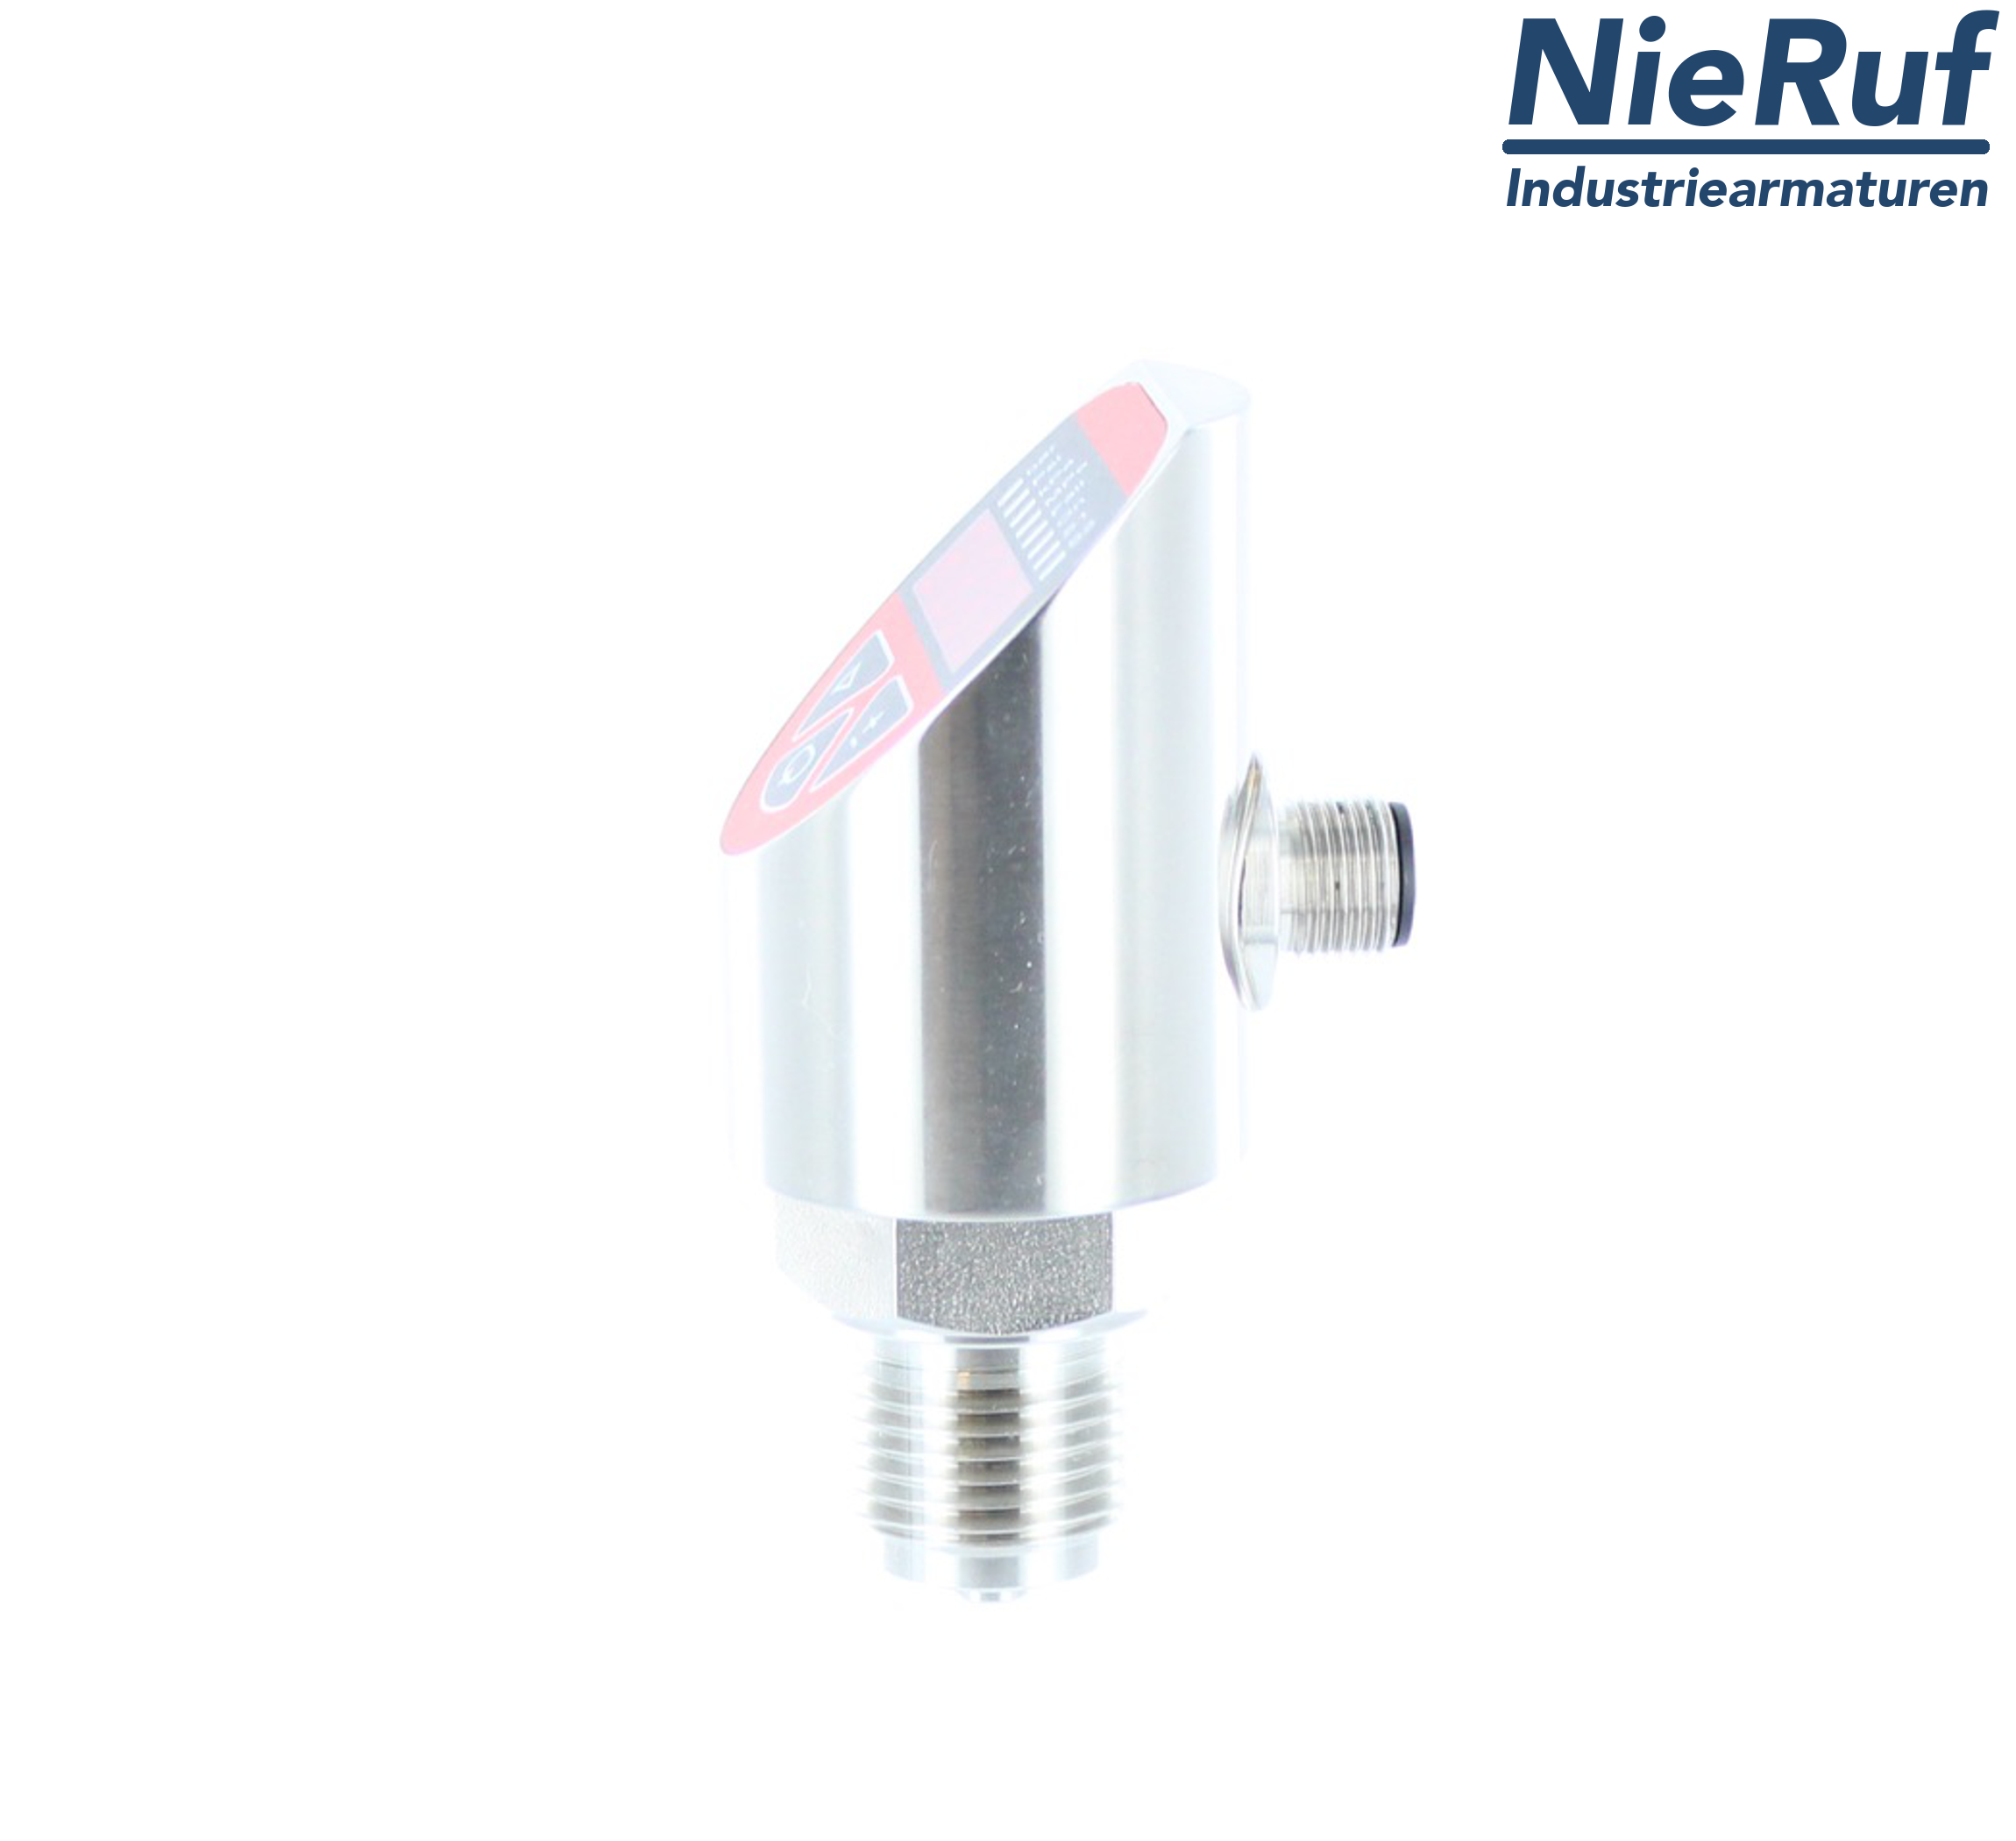 digital pressure sensor G 1/2" B IB 4-wire: 1xPNP, 1x4 - 20mA, Desina FPM 0,0 - 250,0 bar